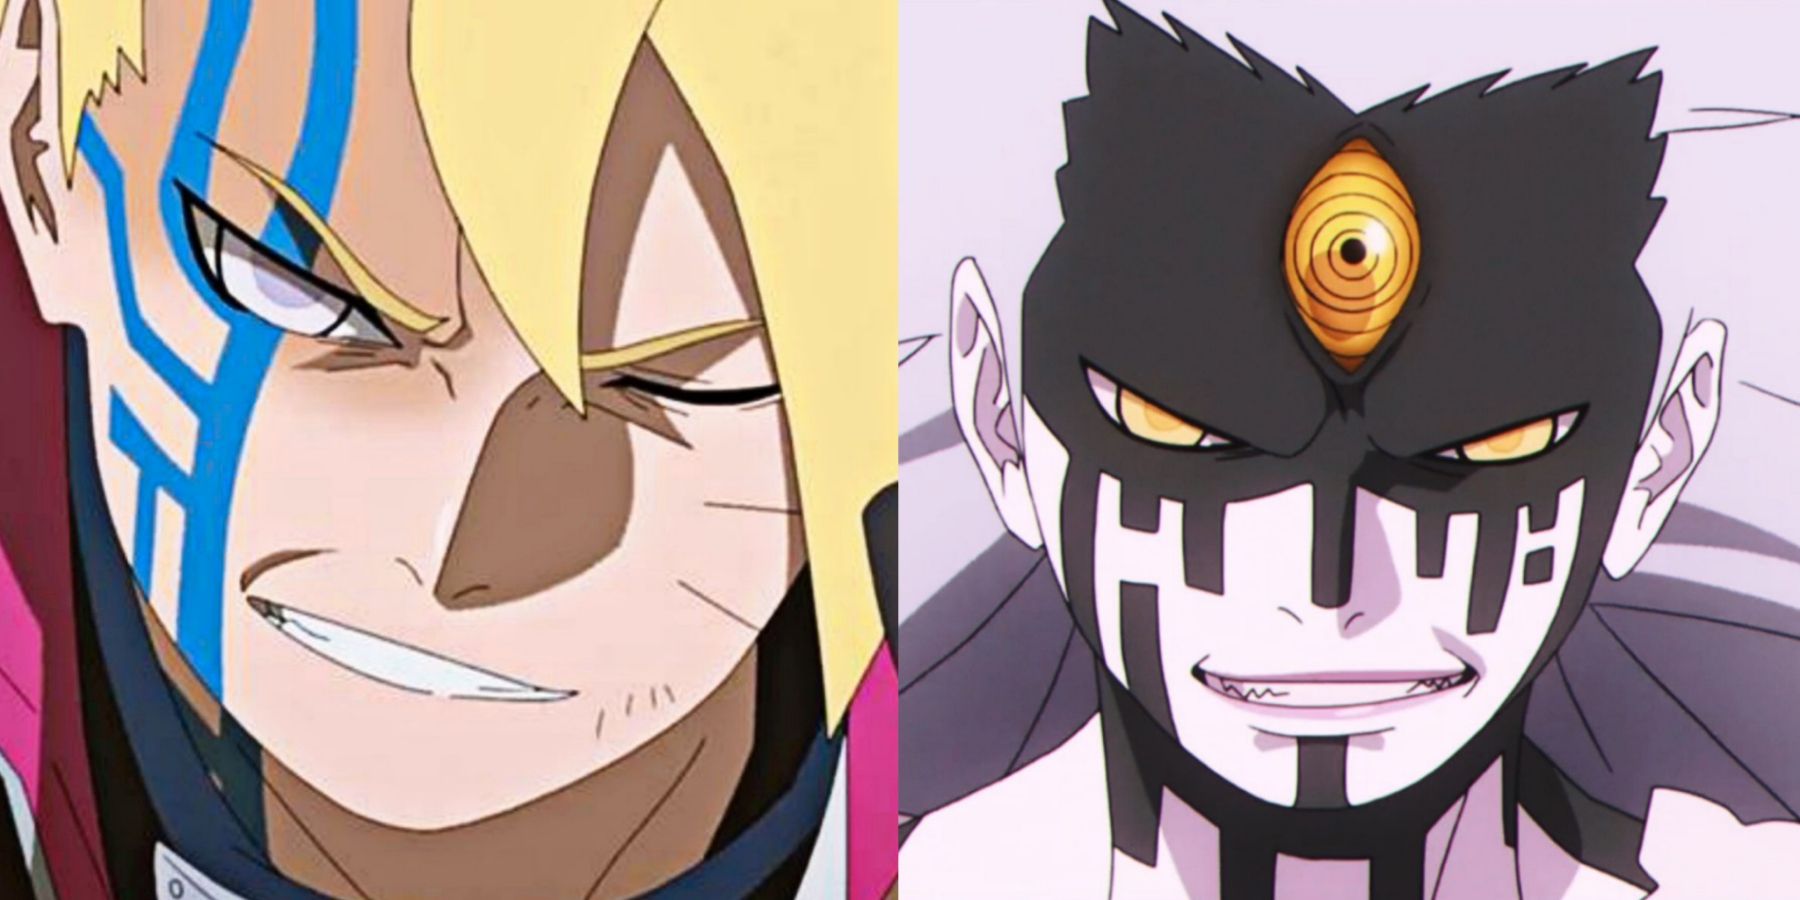 The TRAGIC Fate of Naruto and Sasuke! Boruto TIME SKIP and END